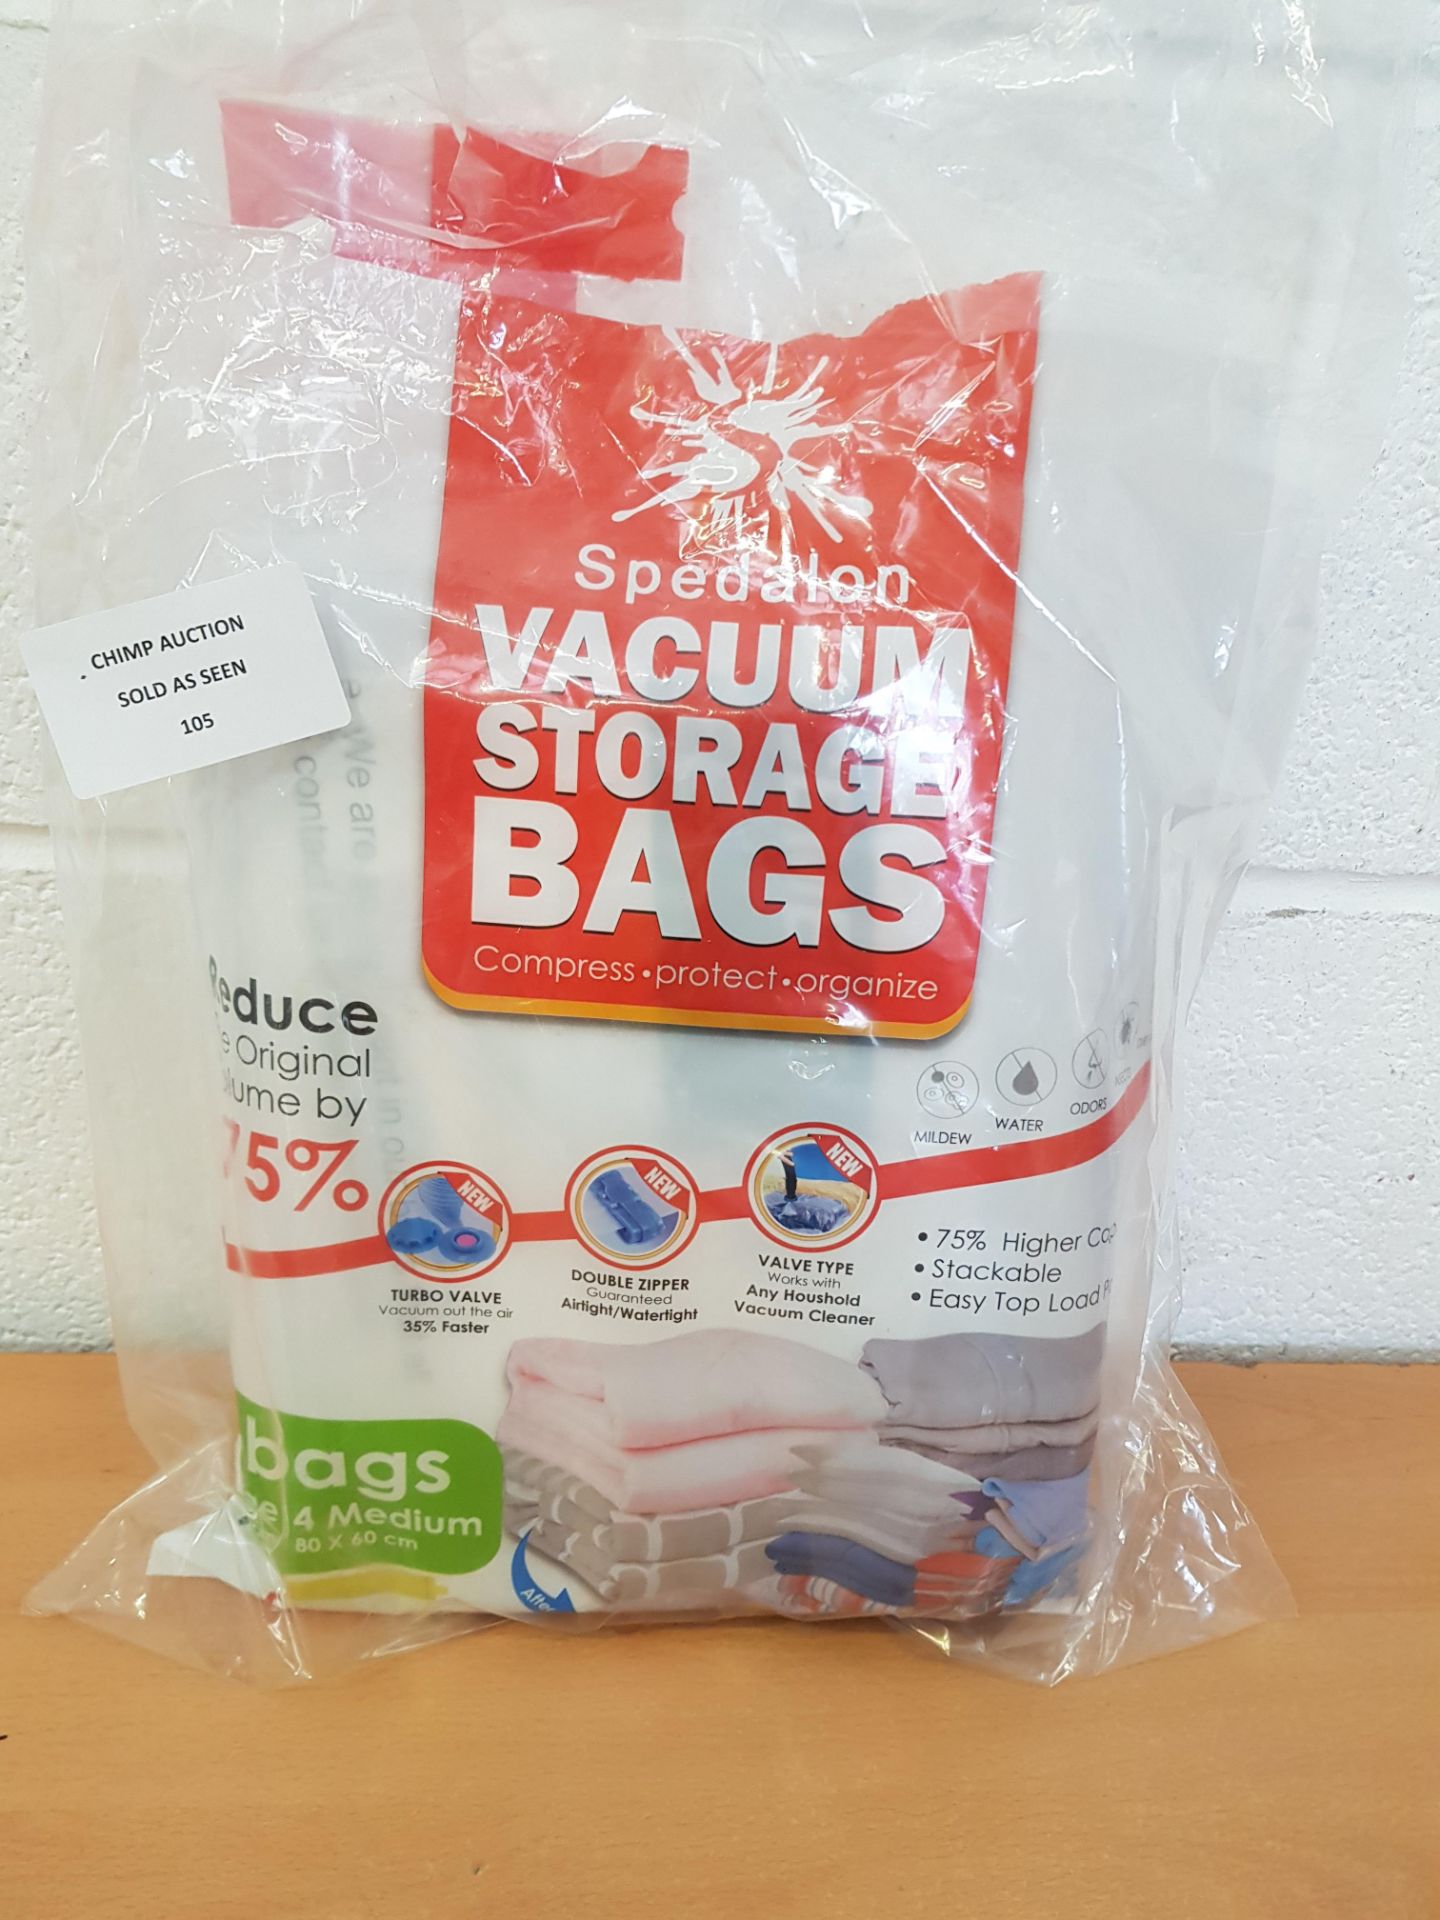 Spedalon Vacuum Storage Bags